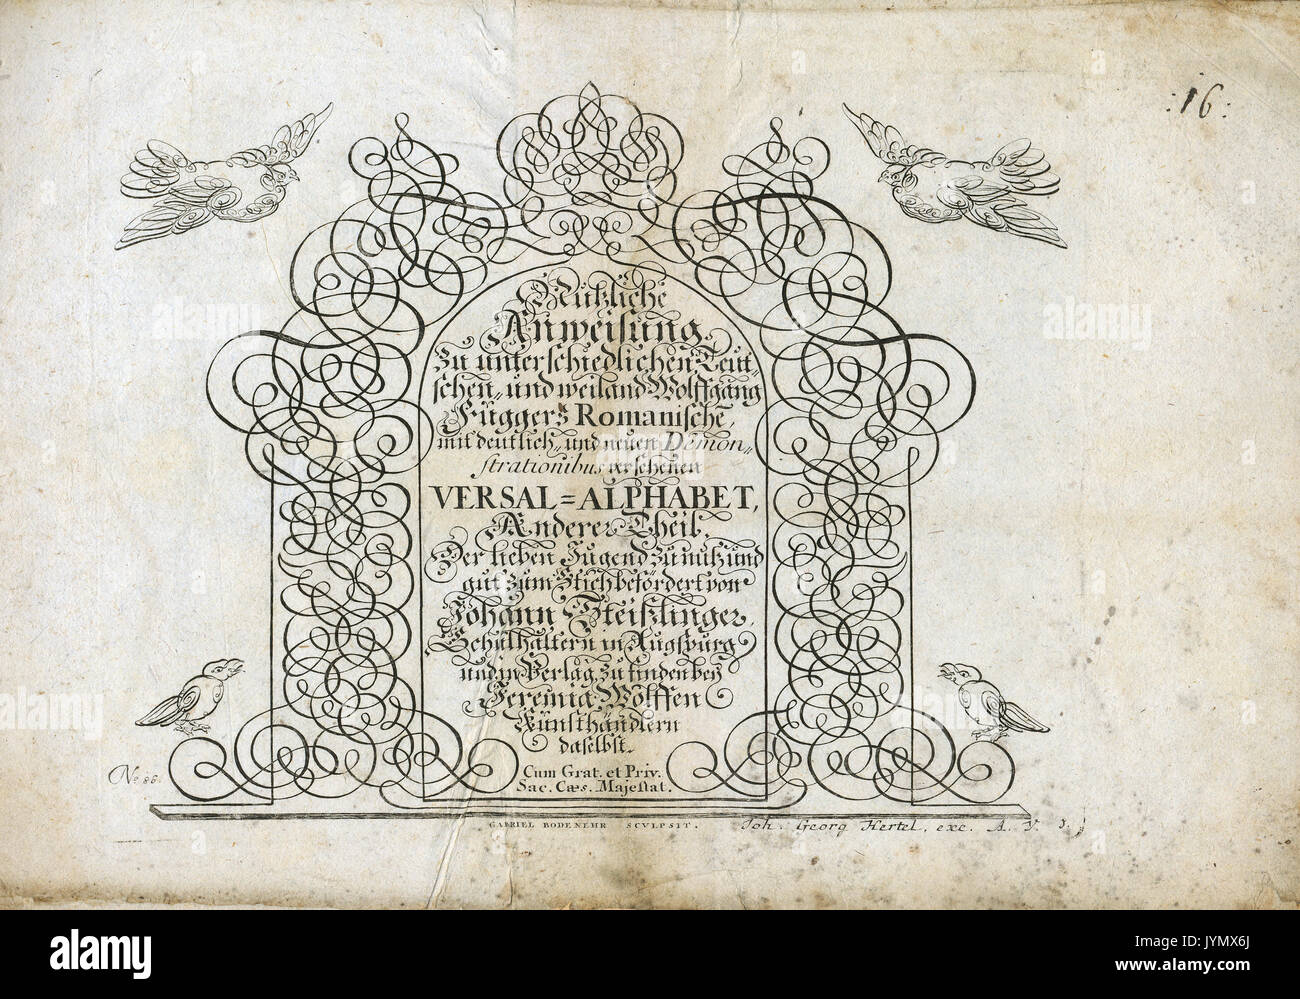 Johann Georg Hertel - éditeur et graveur allemand, 1700 - 1775, Augsburg, Allemagne Banque D'Images